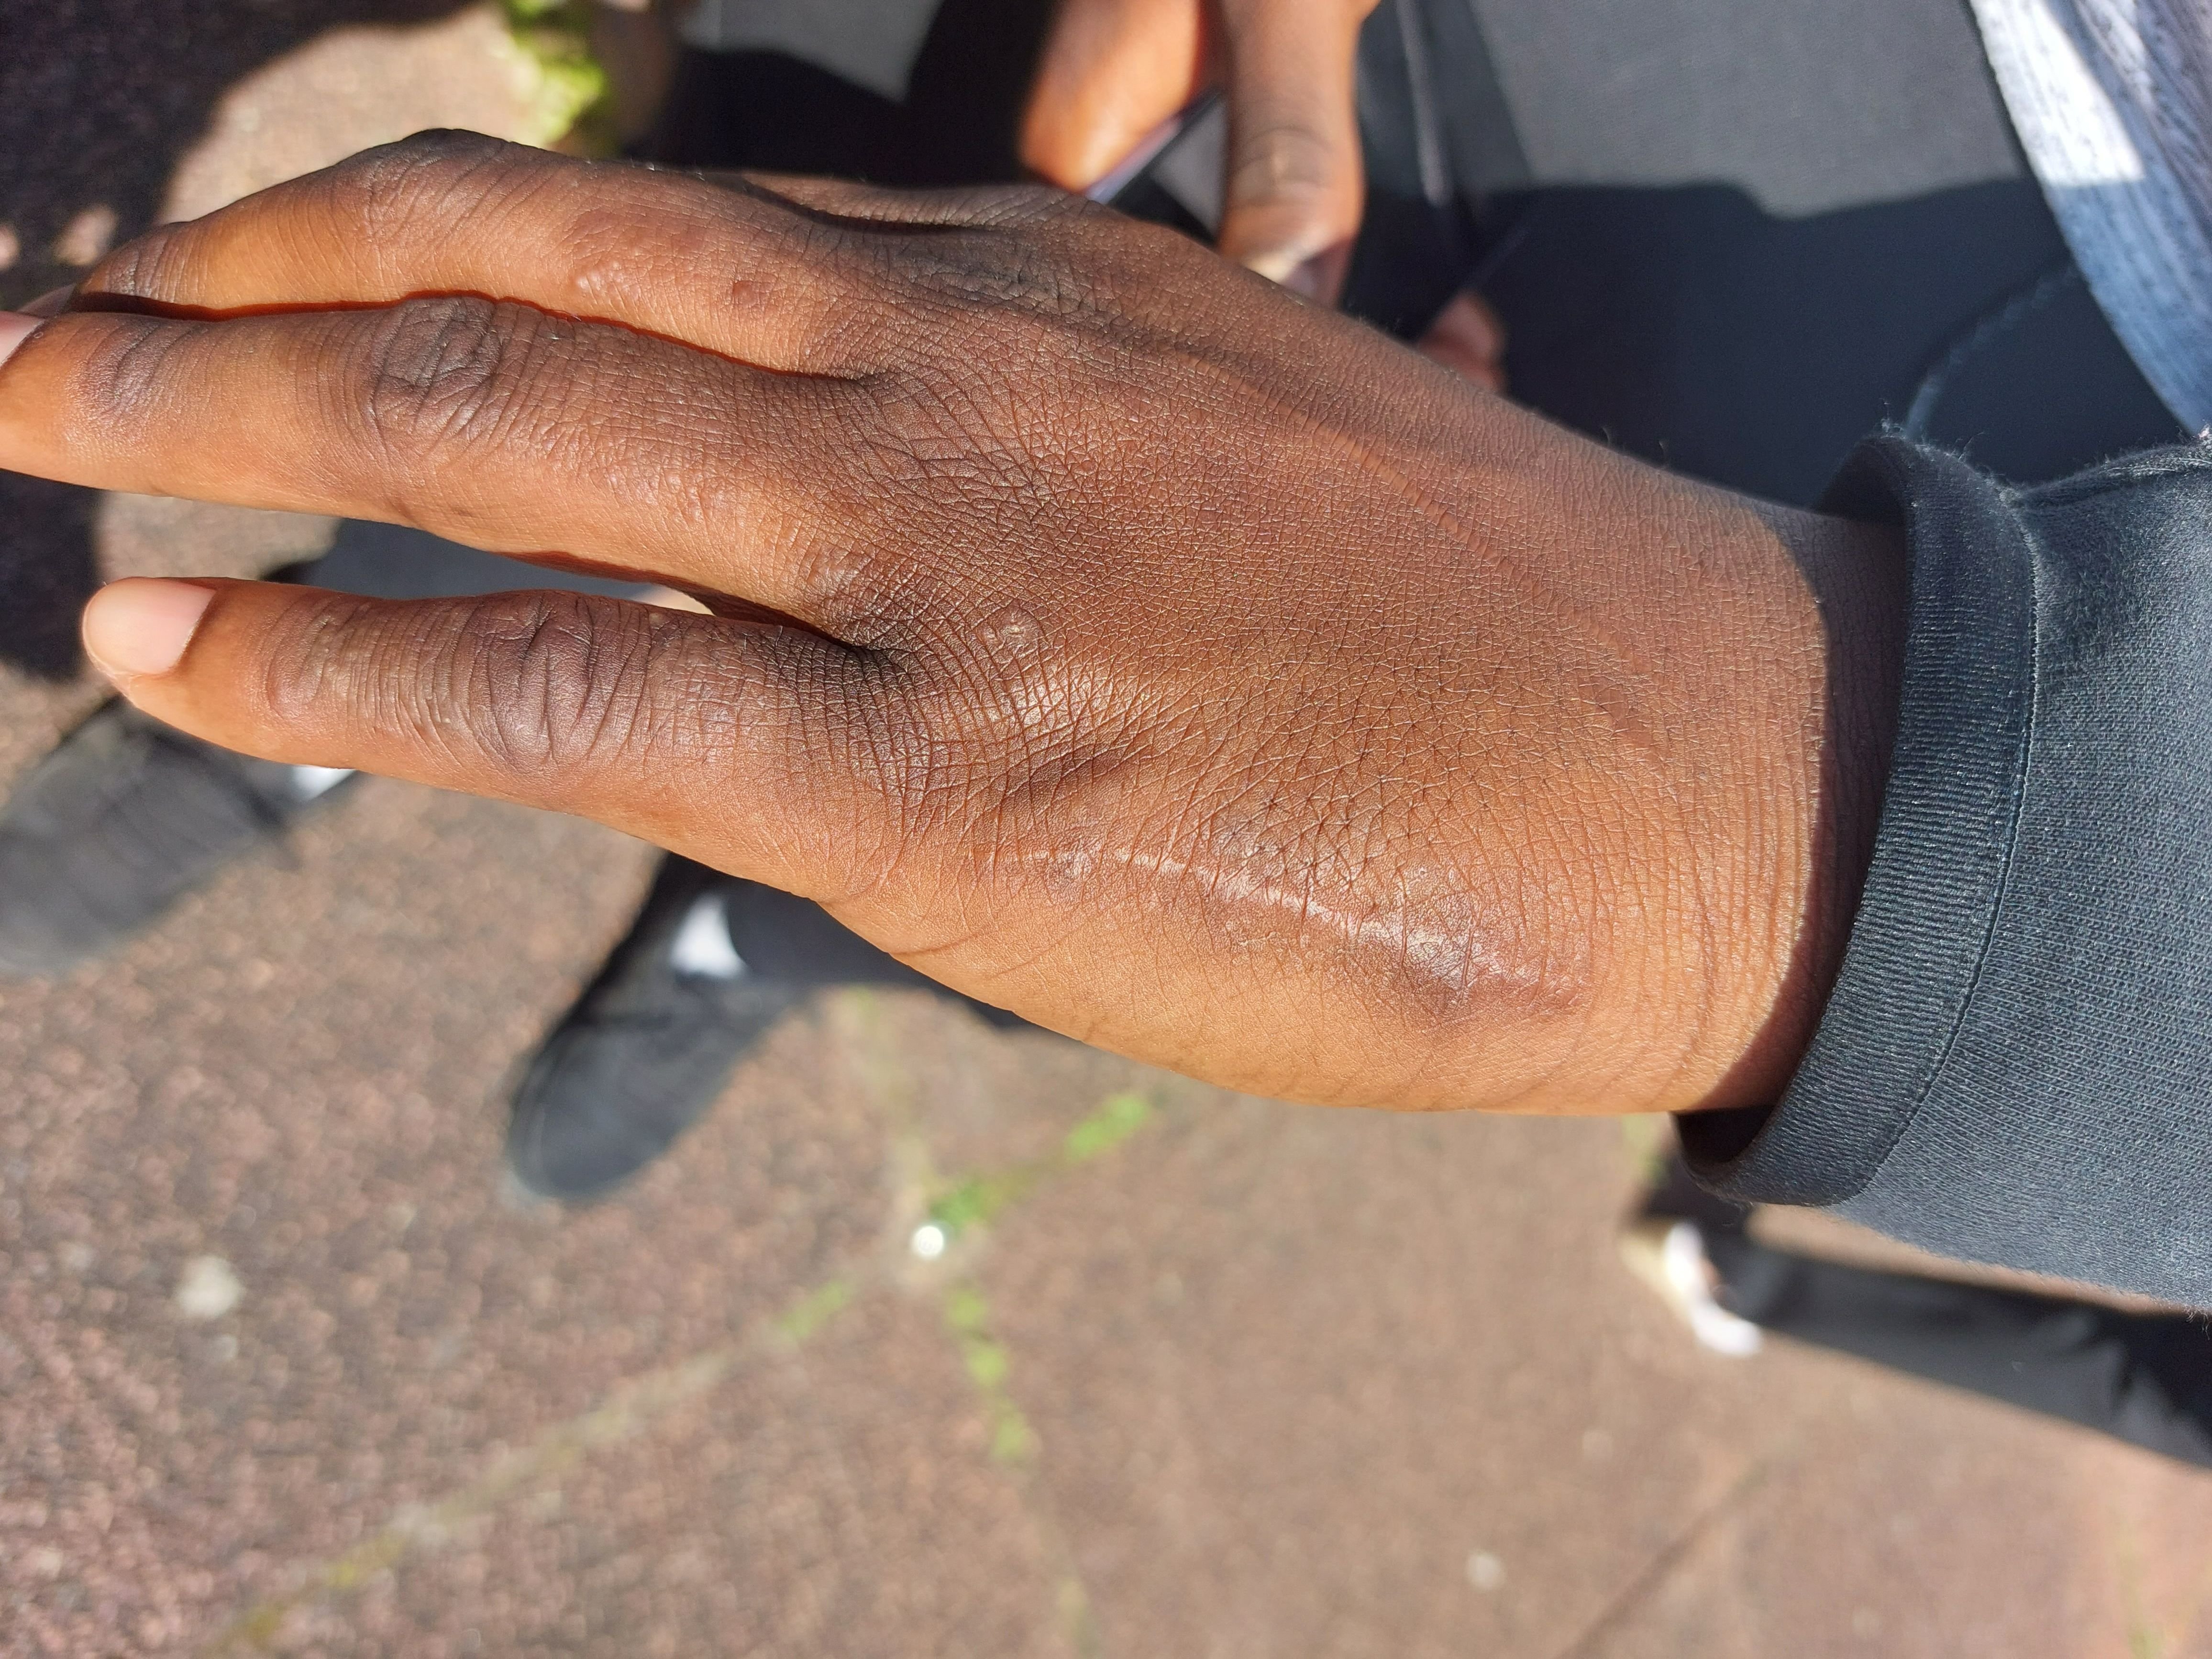 Mamby, désormais âgé de 20 ans, avait eu la main cassée après des coups de matraque portés par un policier de la brigade territoriale de contact (BTC) il y a trois ans. /DR